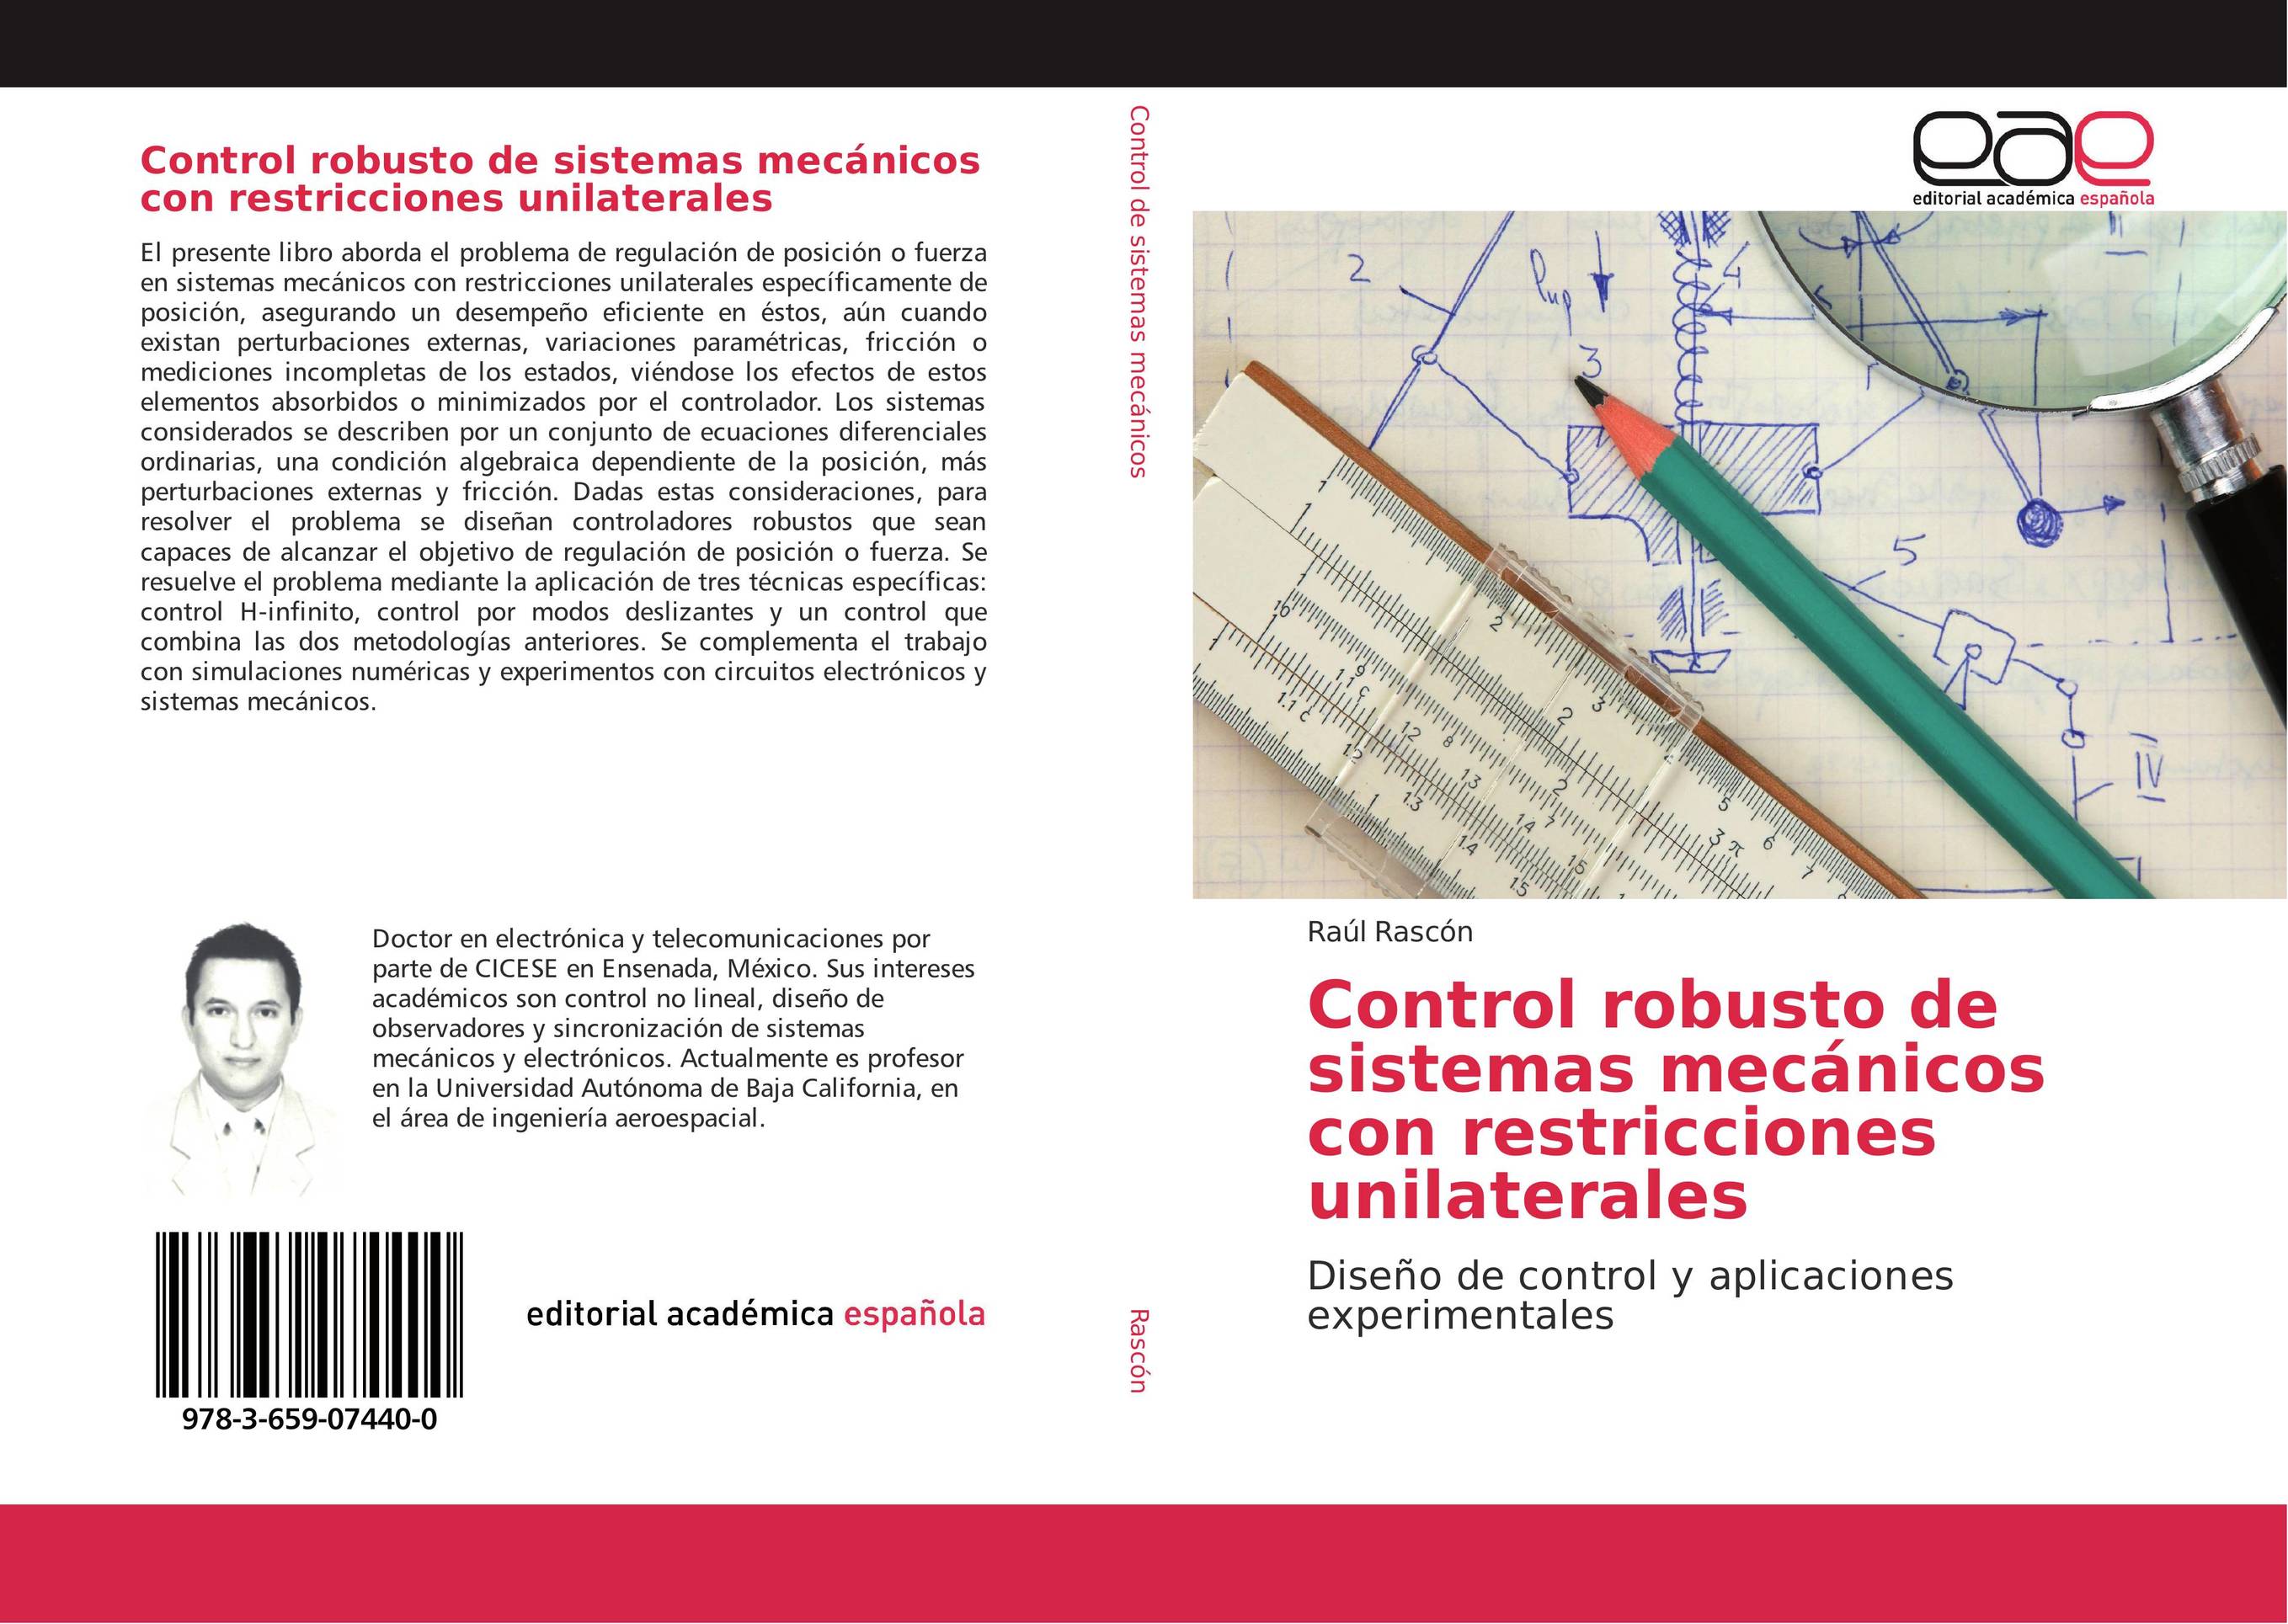 Control robusto de sistemas mecánicos con restricciones unilaterales